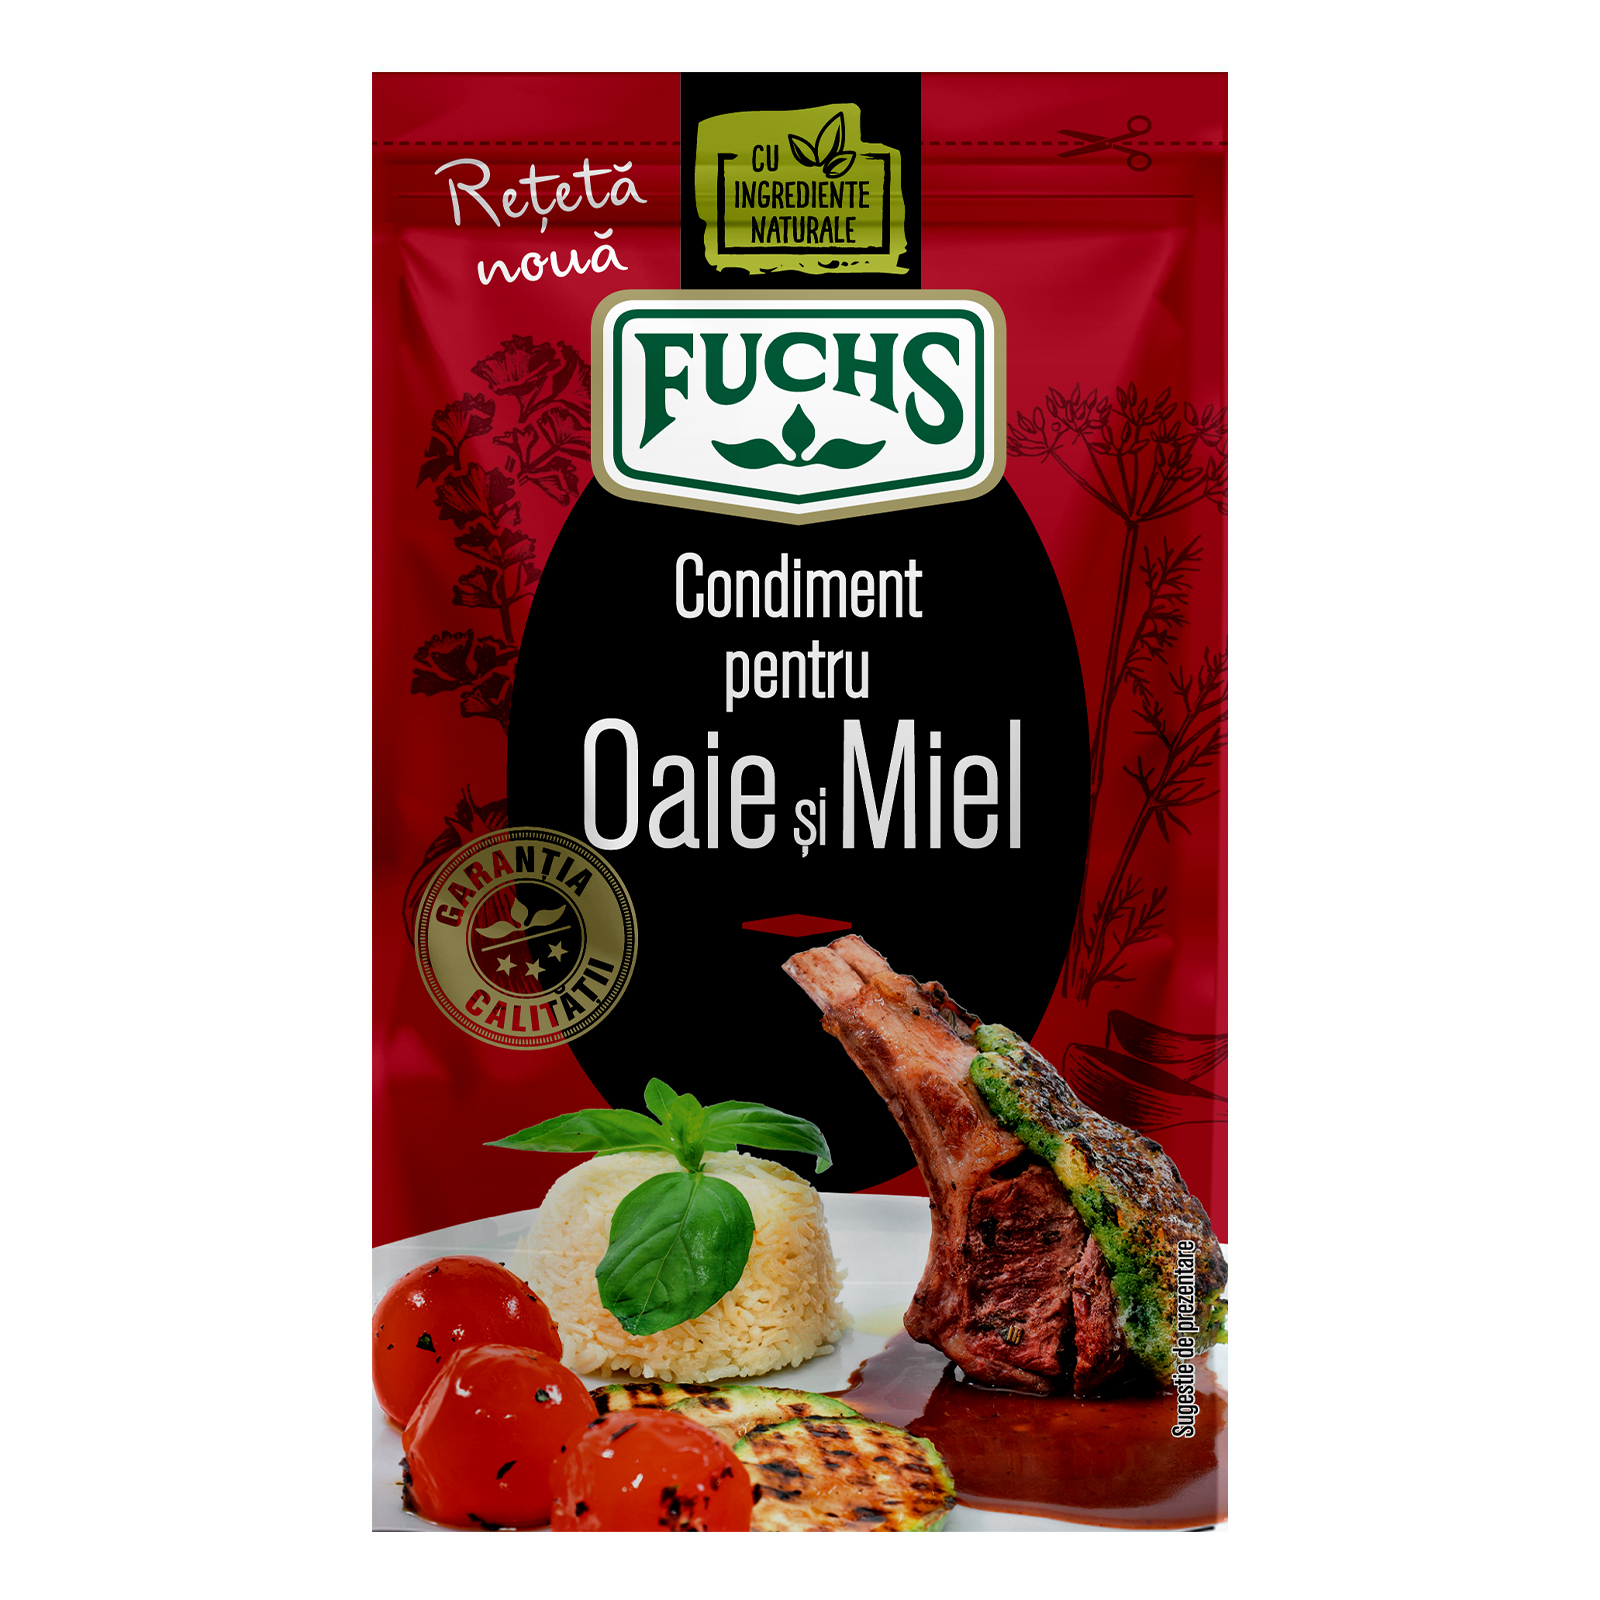 Condiment oaie-miel, Fuchs, 20g